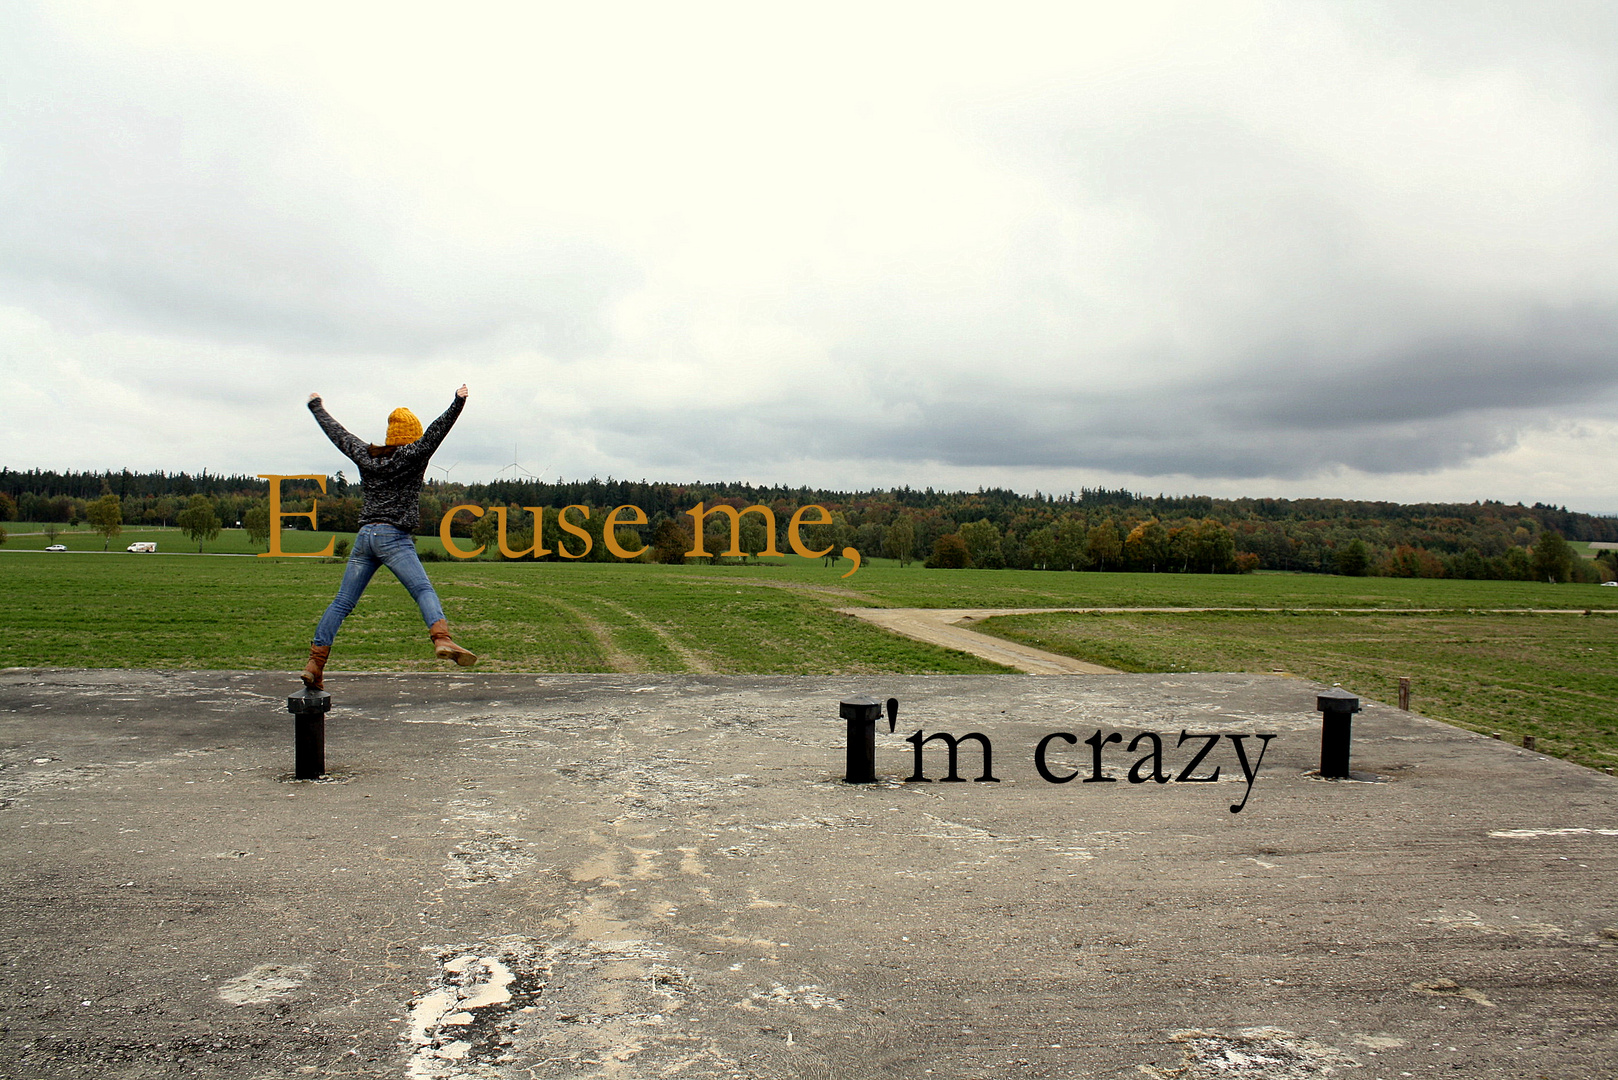 Excuse me, I'm crazy